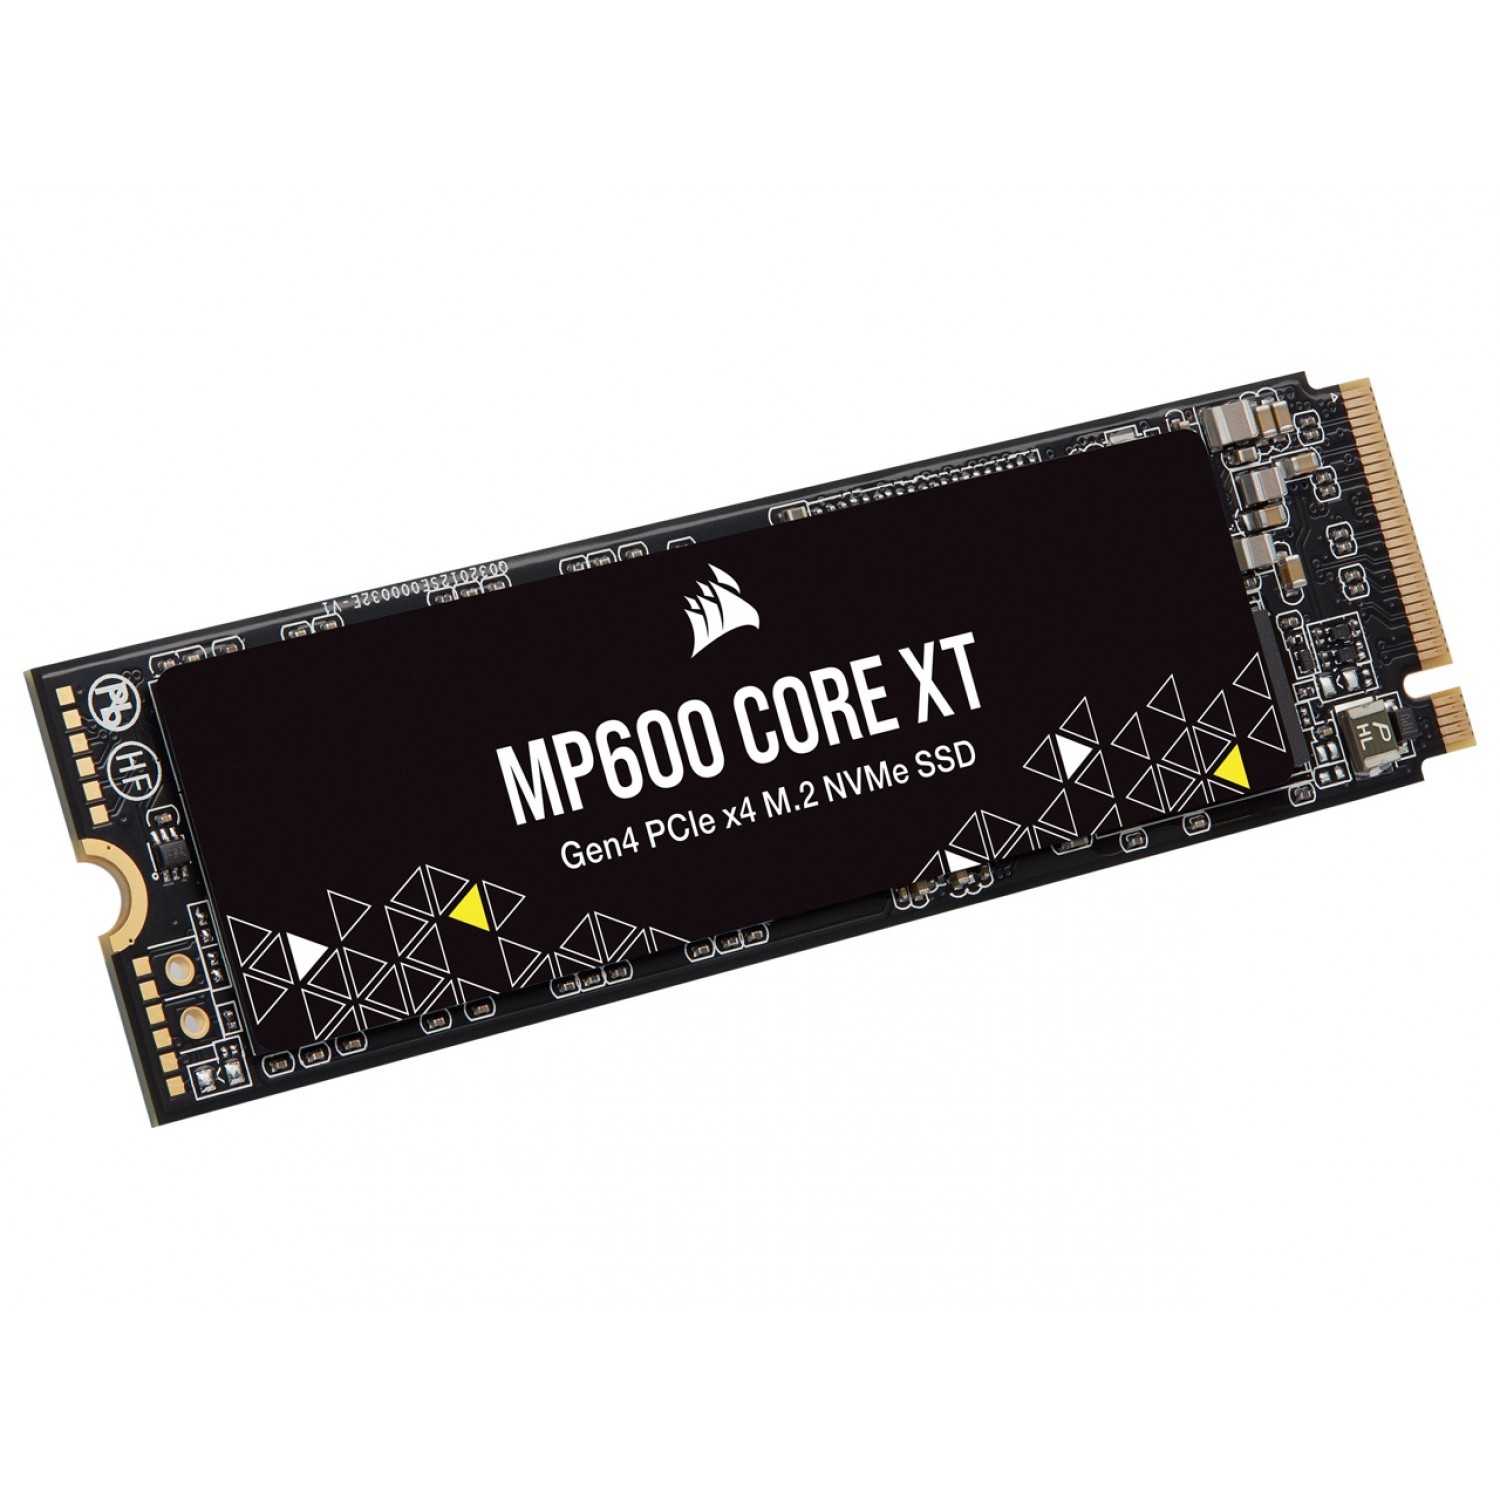 حافظه اس اس دی Corsair MP600 Core XT 2TB-1